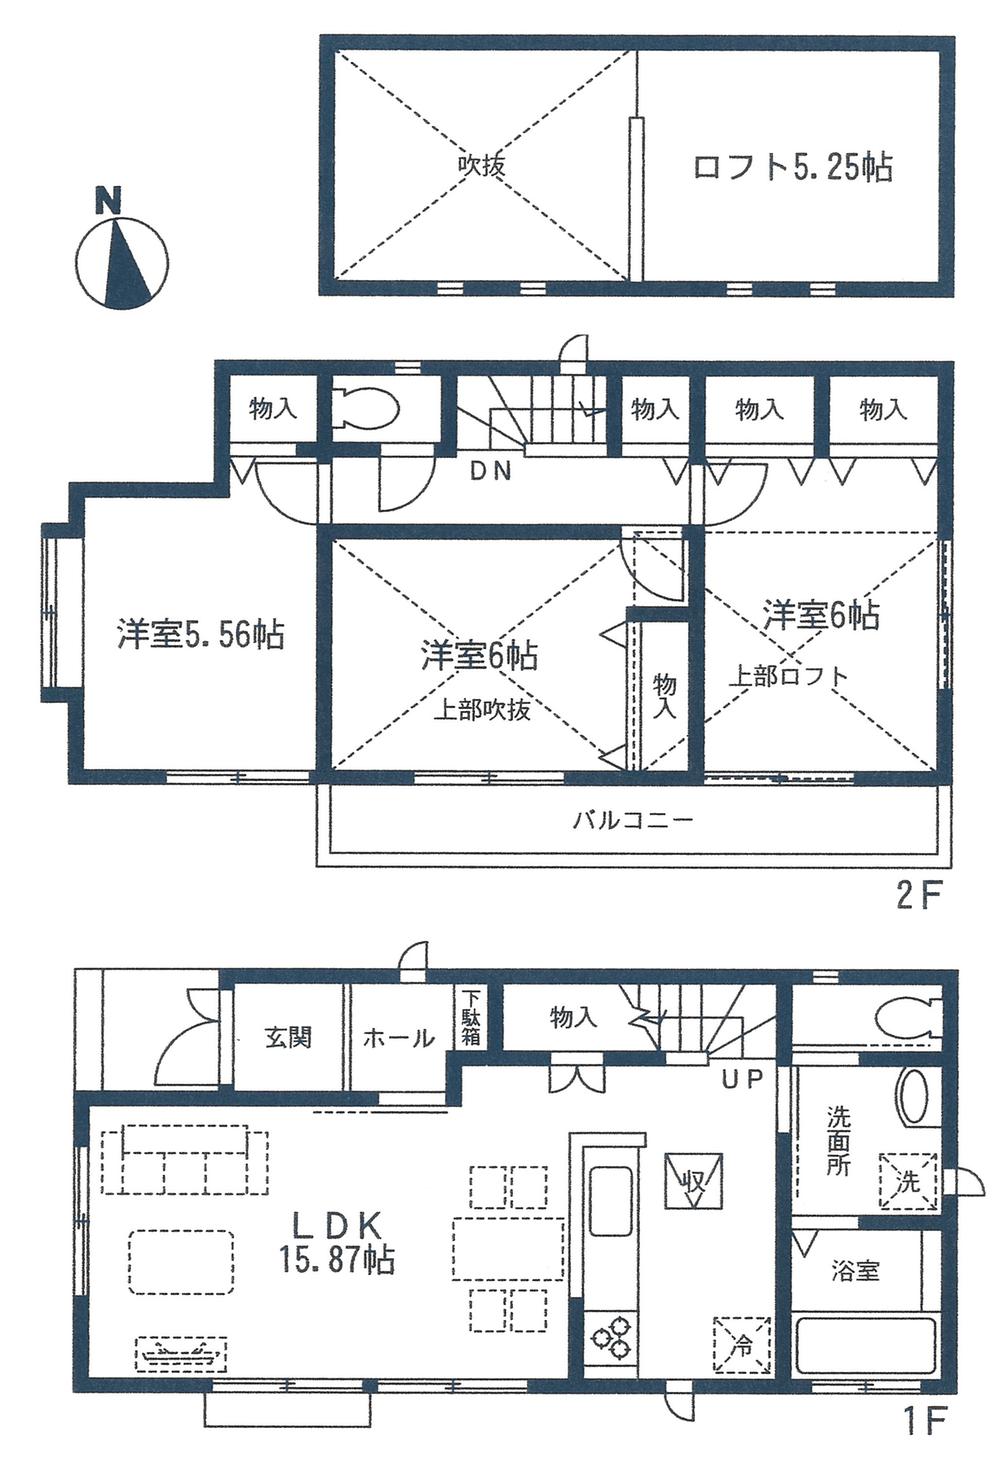 Floor plan. 38,800,000 yen, 3LDK + S (storeroom), Land area 104.25 sq m , Building area 82.6 sq m